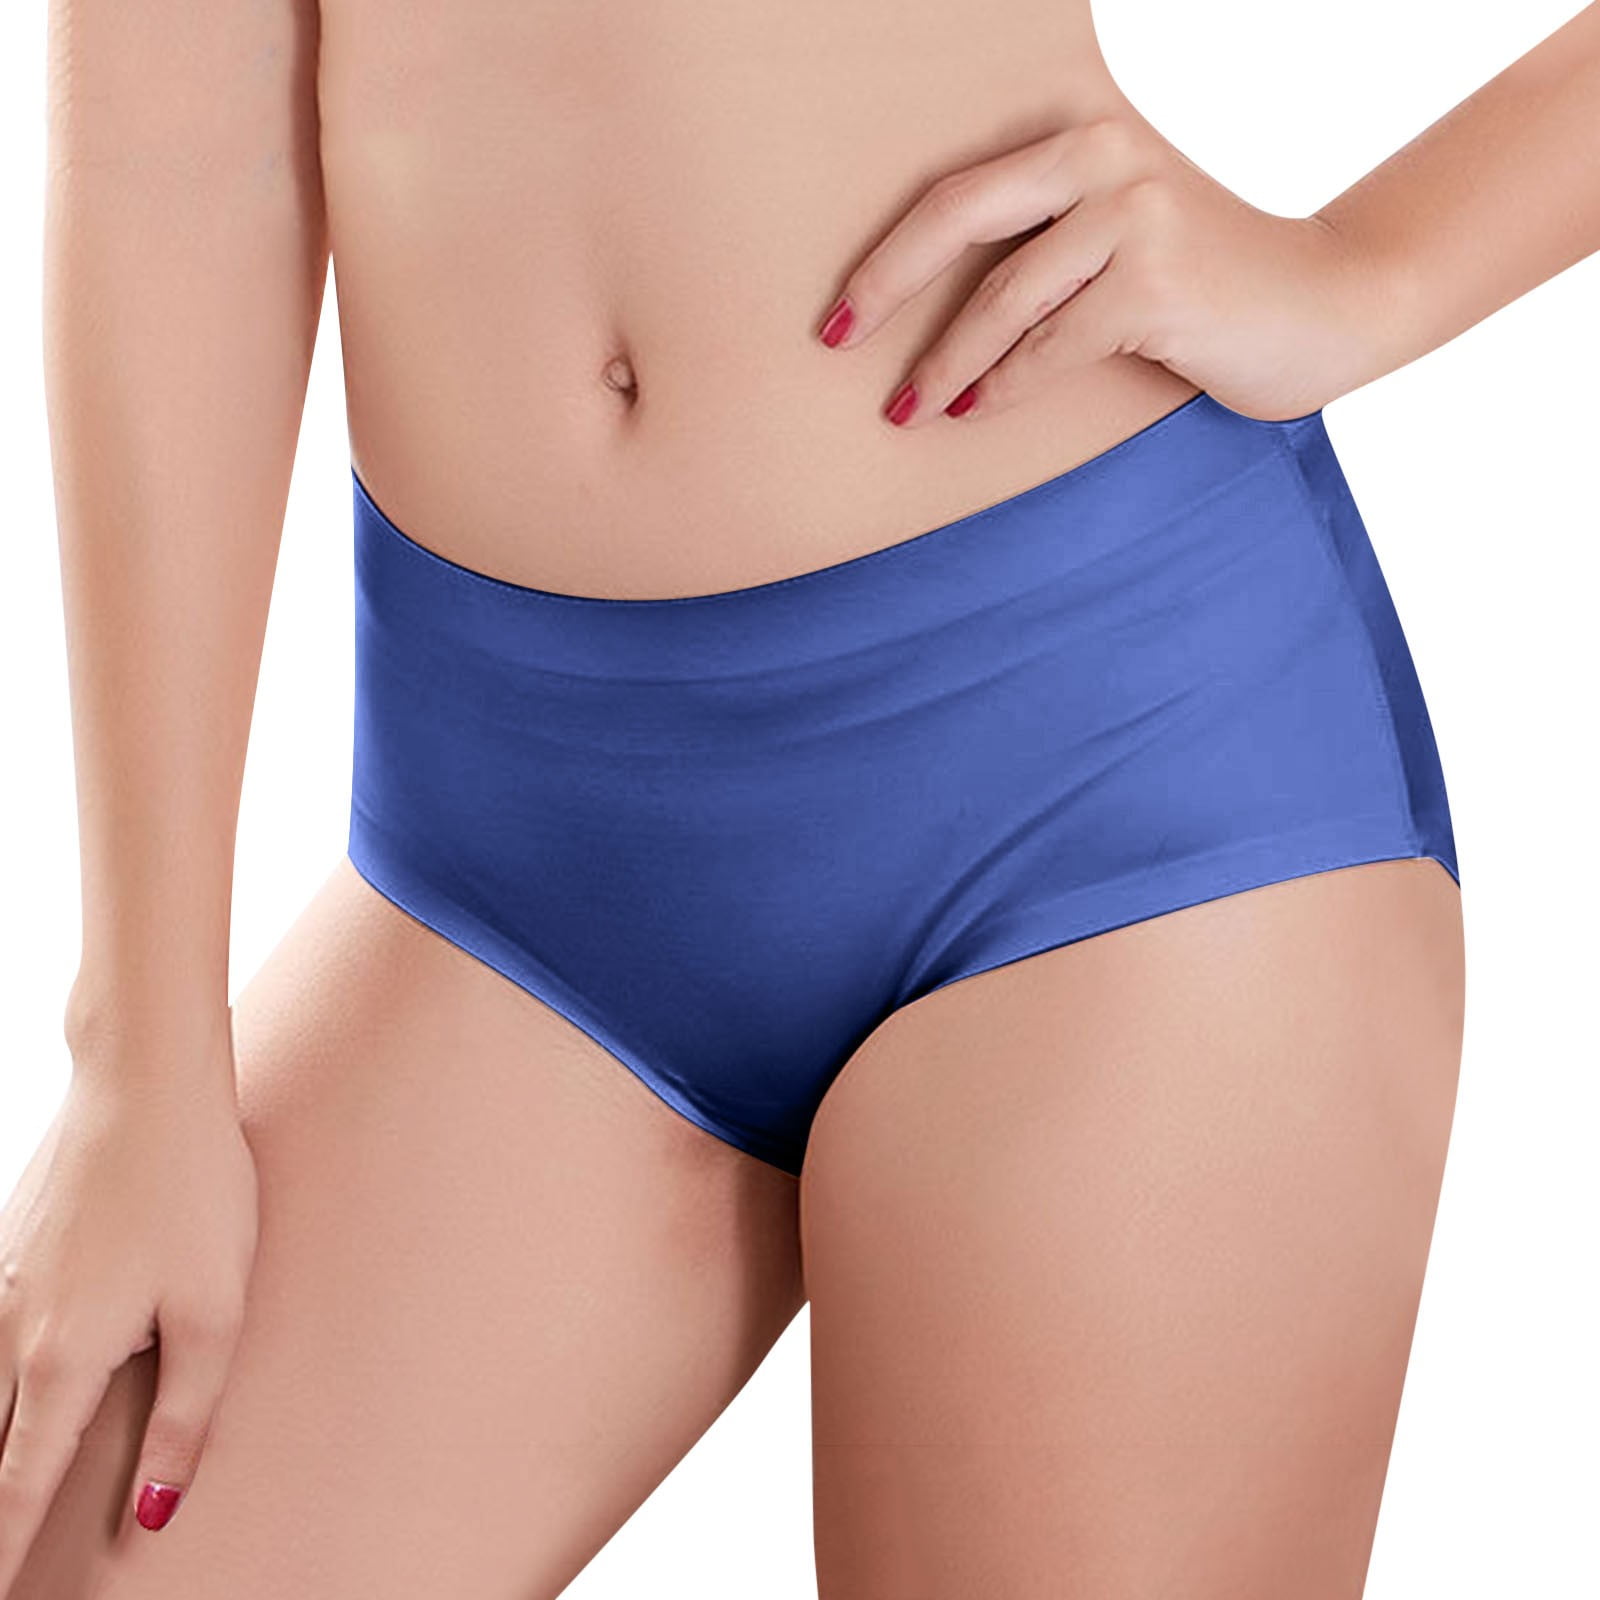 Shpwfbe Women's Underwear Sexy Underwear for Women Ladies Plus